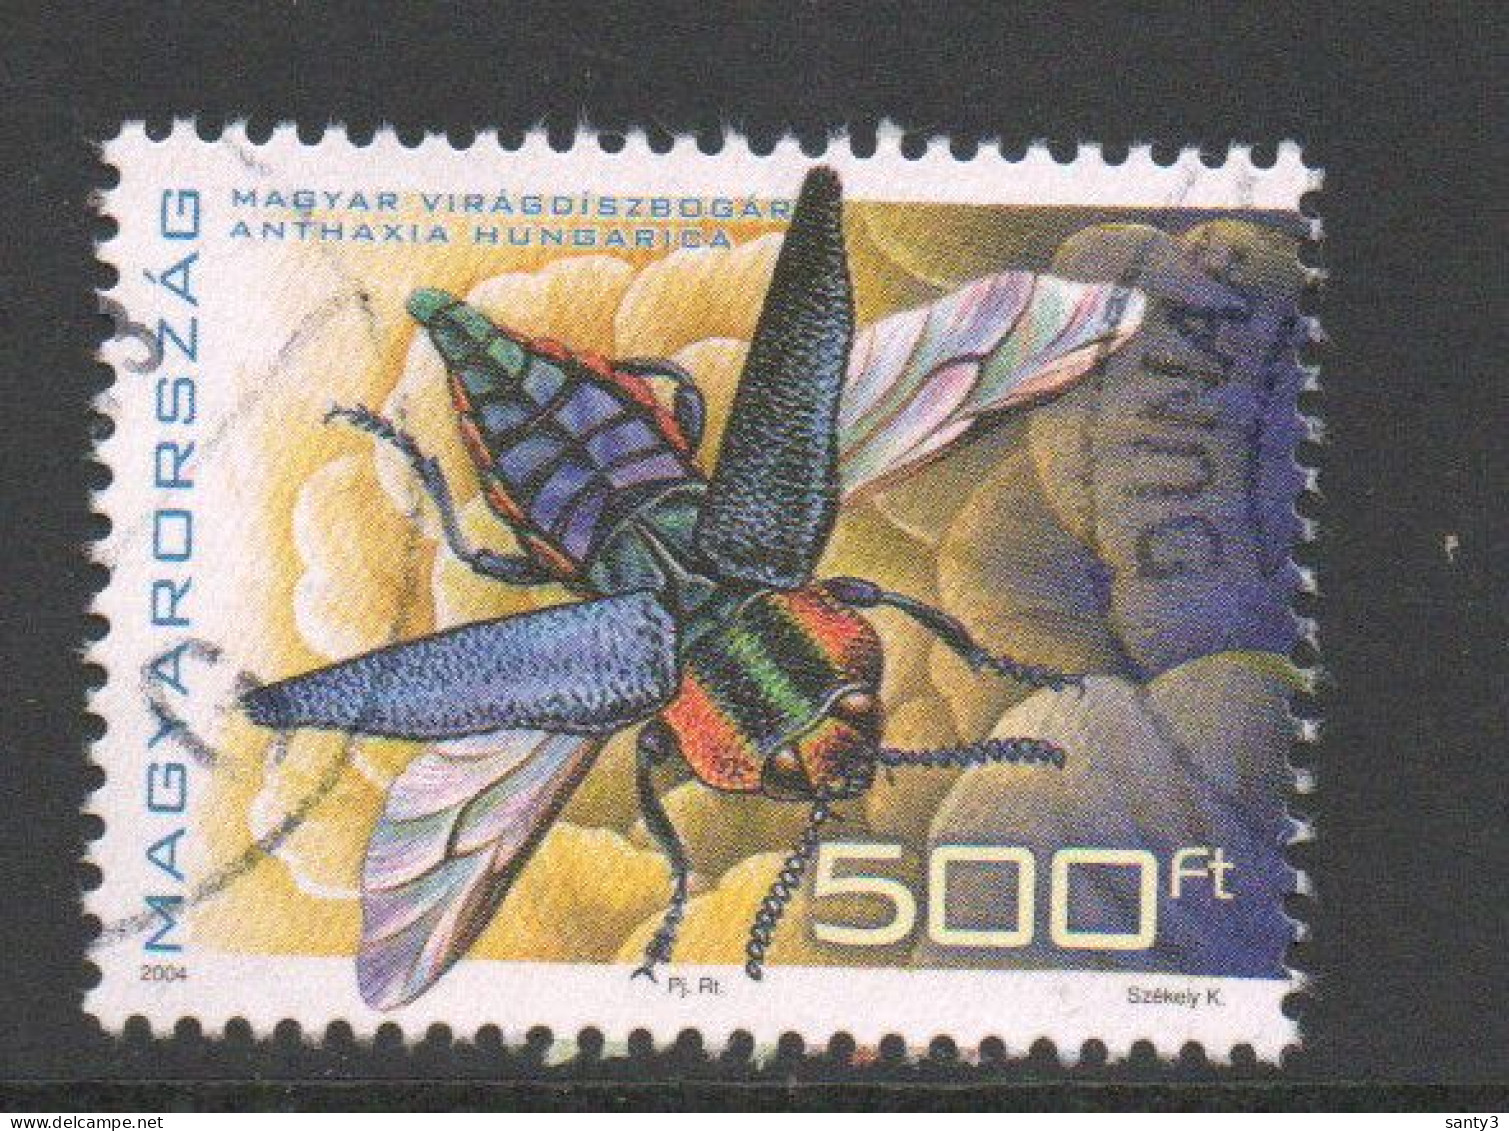 Hongarije 2004 Mi 4860 Uit Blok 292 Hoge Waarde,   Gestempeld - Used Stamps